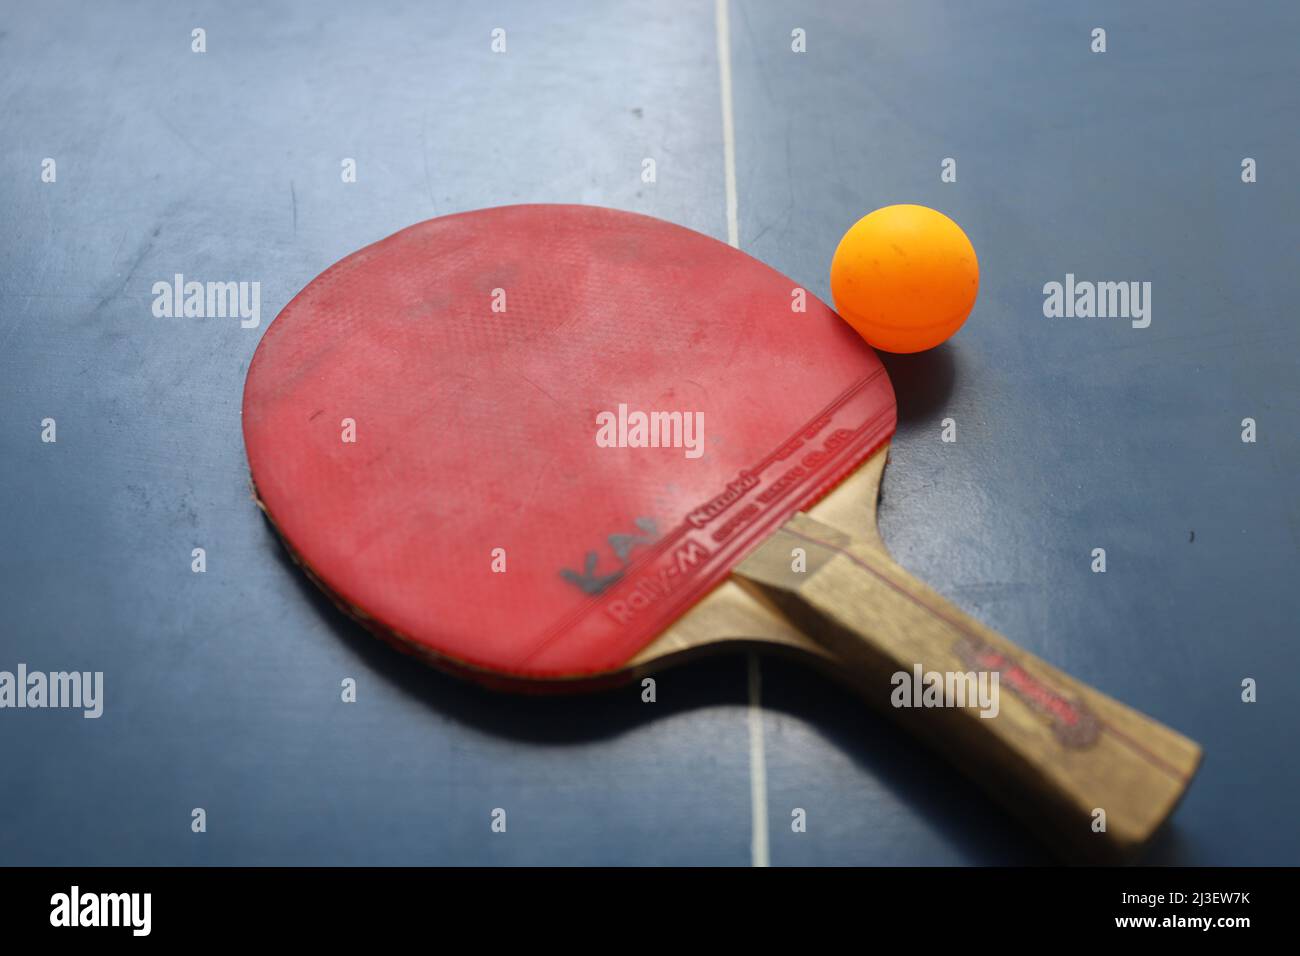 SURABAYA, INDONESIEN - 06. MÄRZ 2020: Zwei Tischtennis- oder Tischtennisschläger und -Kugeln auf einem blauen Tisch und Netz Stockfoto